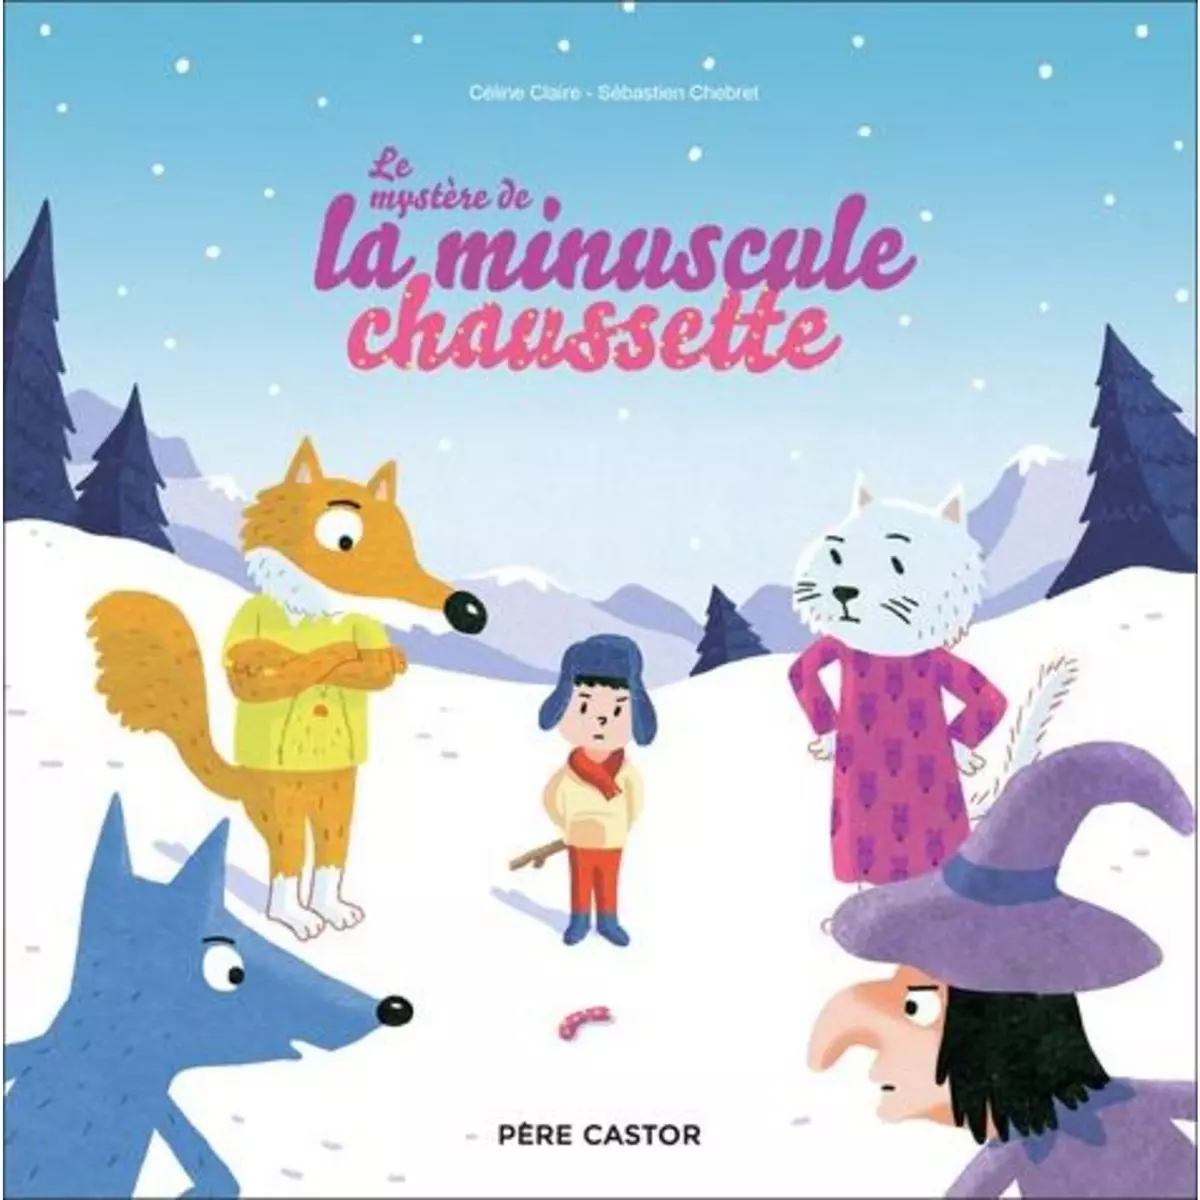  LE MYSTERE DE LA MINUSCULE CHAUSSETTE, Claire Céline